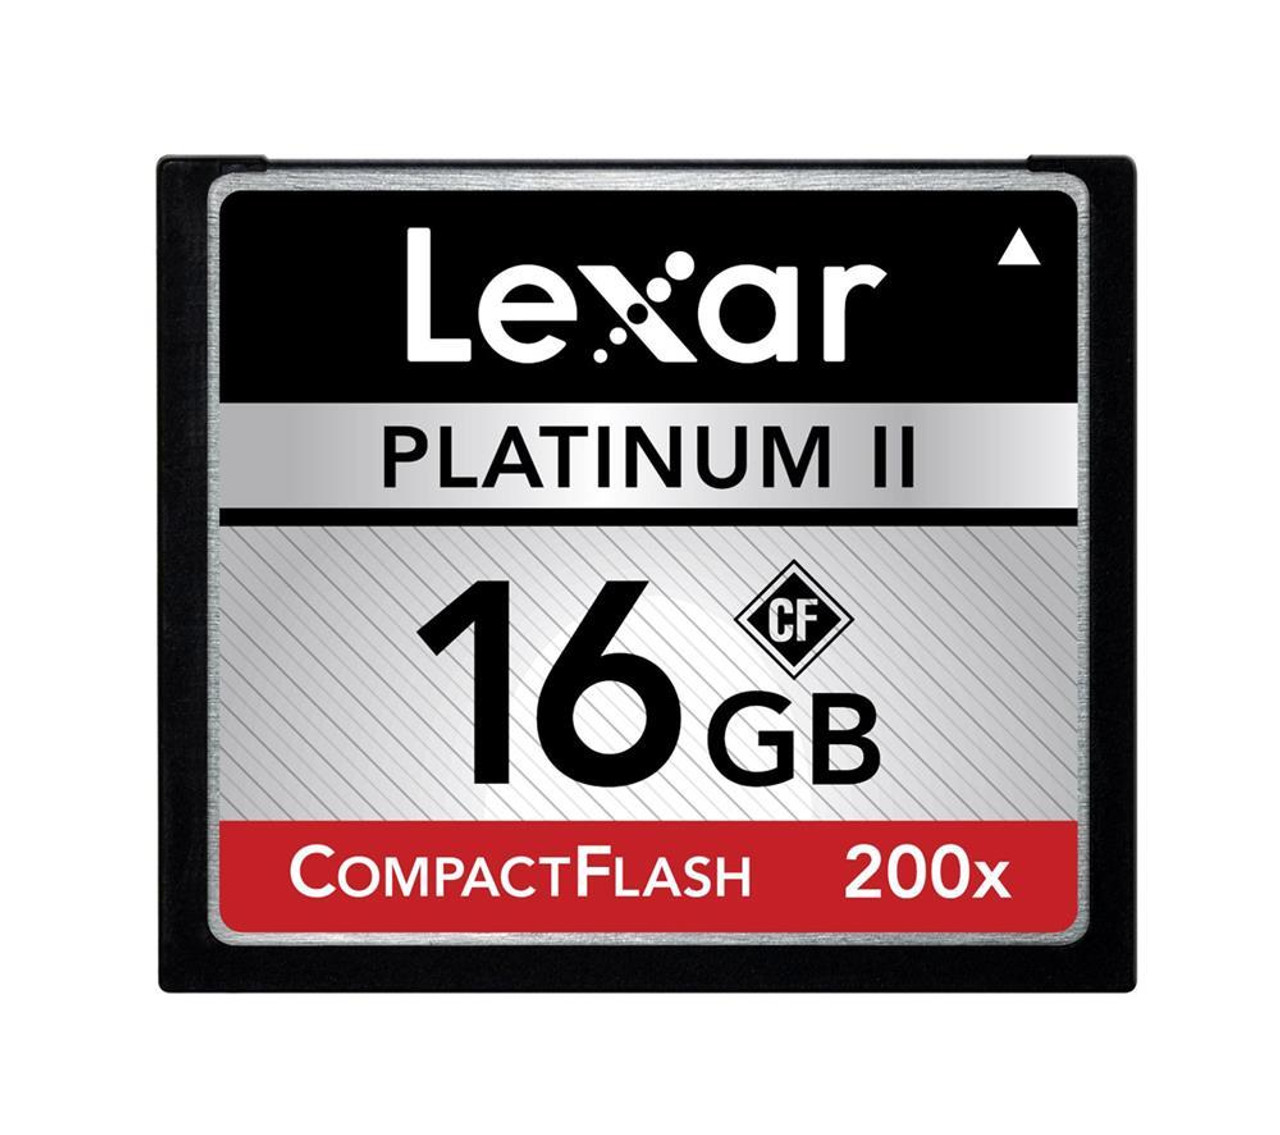 Купить 200 гб. Lexar 16 Compact Flash. Карта памяти Lexar Platinum II 80x COMPACTFLASH 1gb. Lexar Compact Flash 512 GB. Flash Card Lexar.